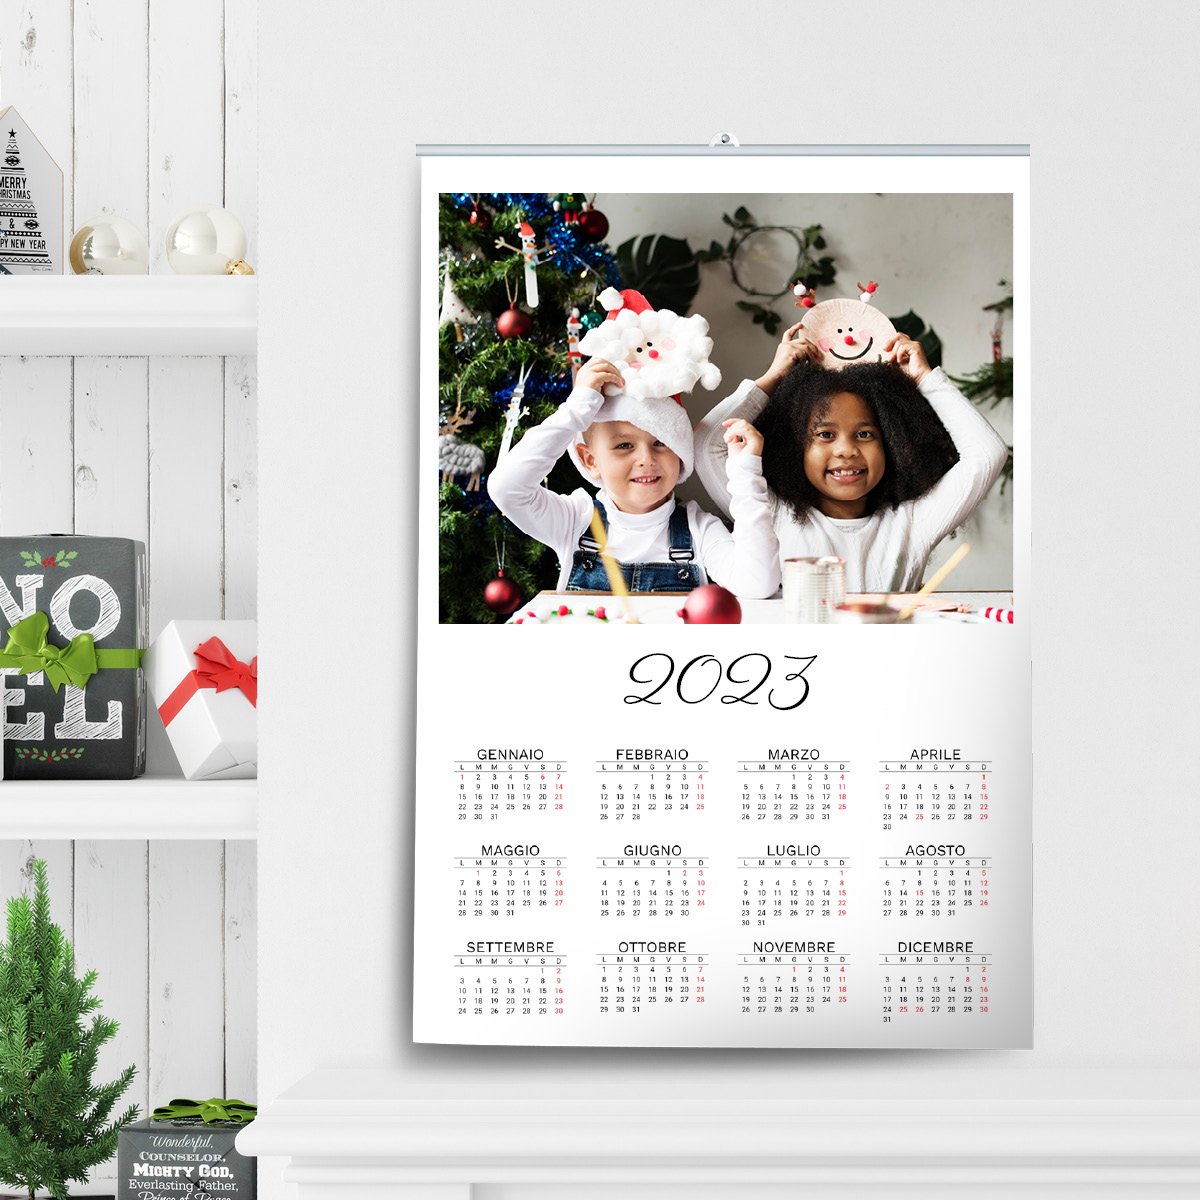 Calendari annuali personalizzati | idee regalo Natale | ilFotoalbum